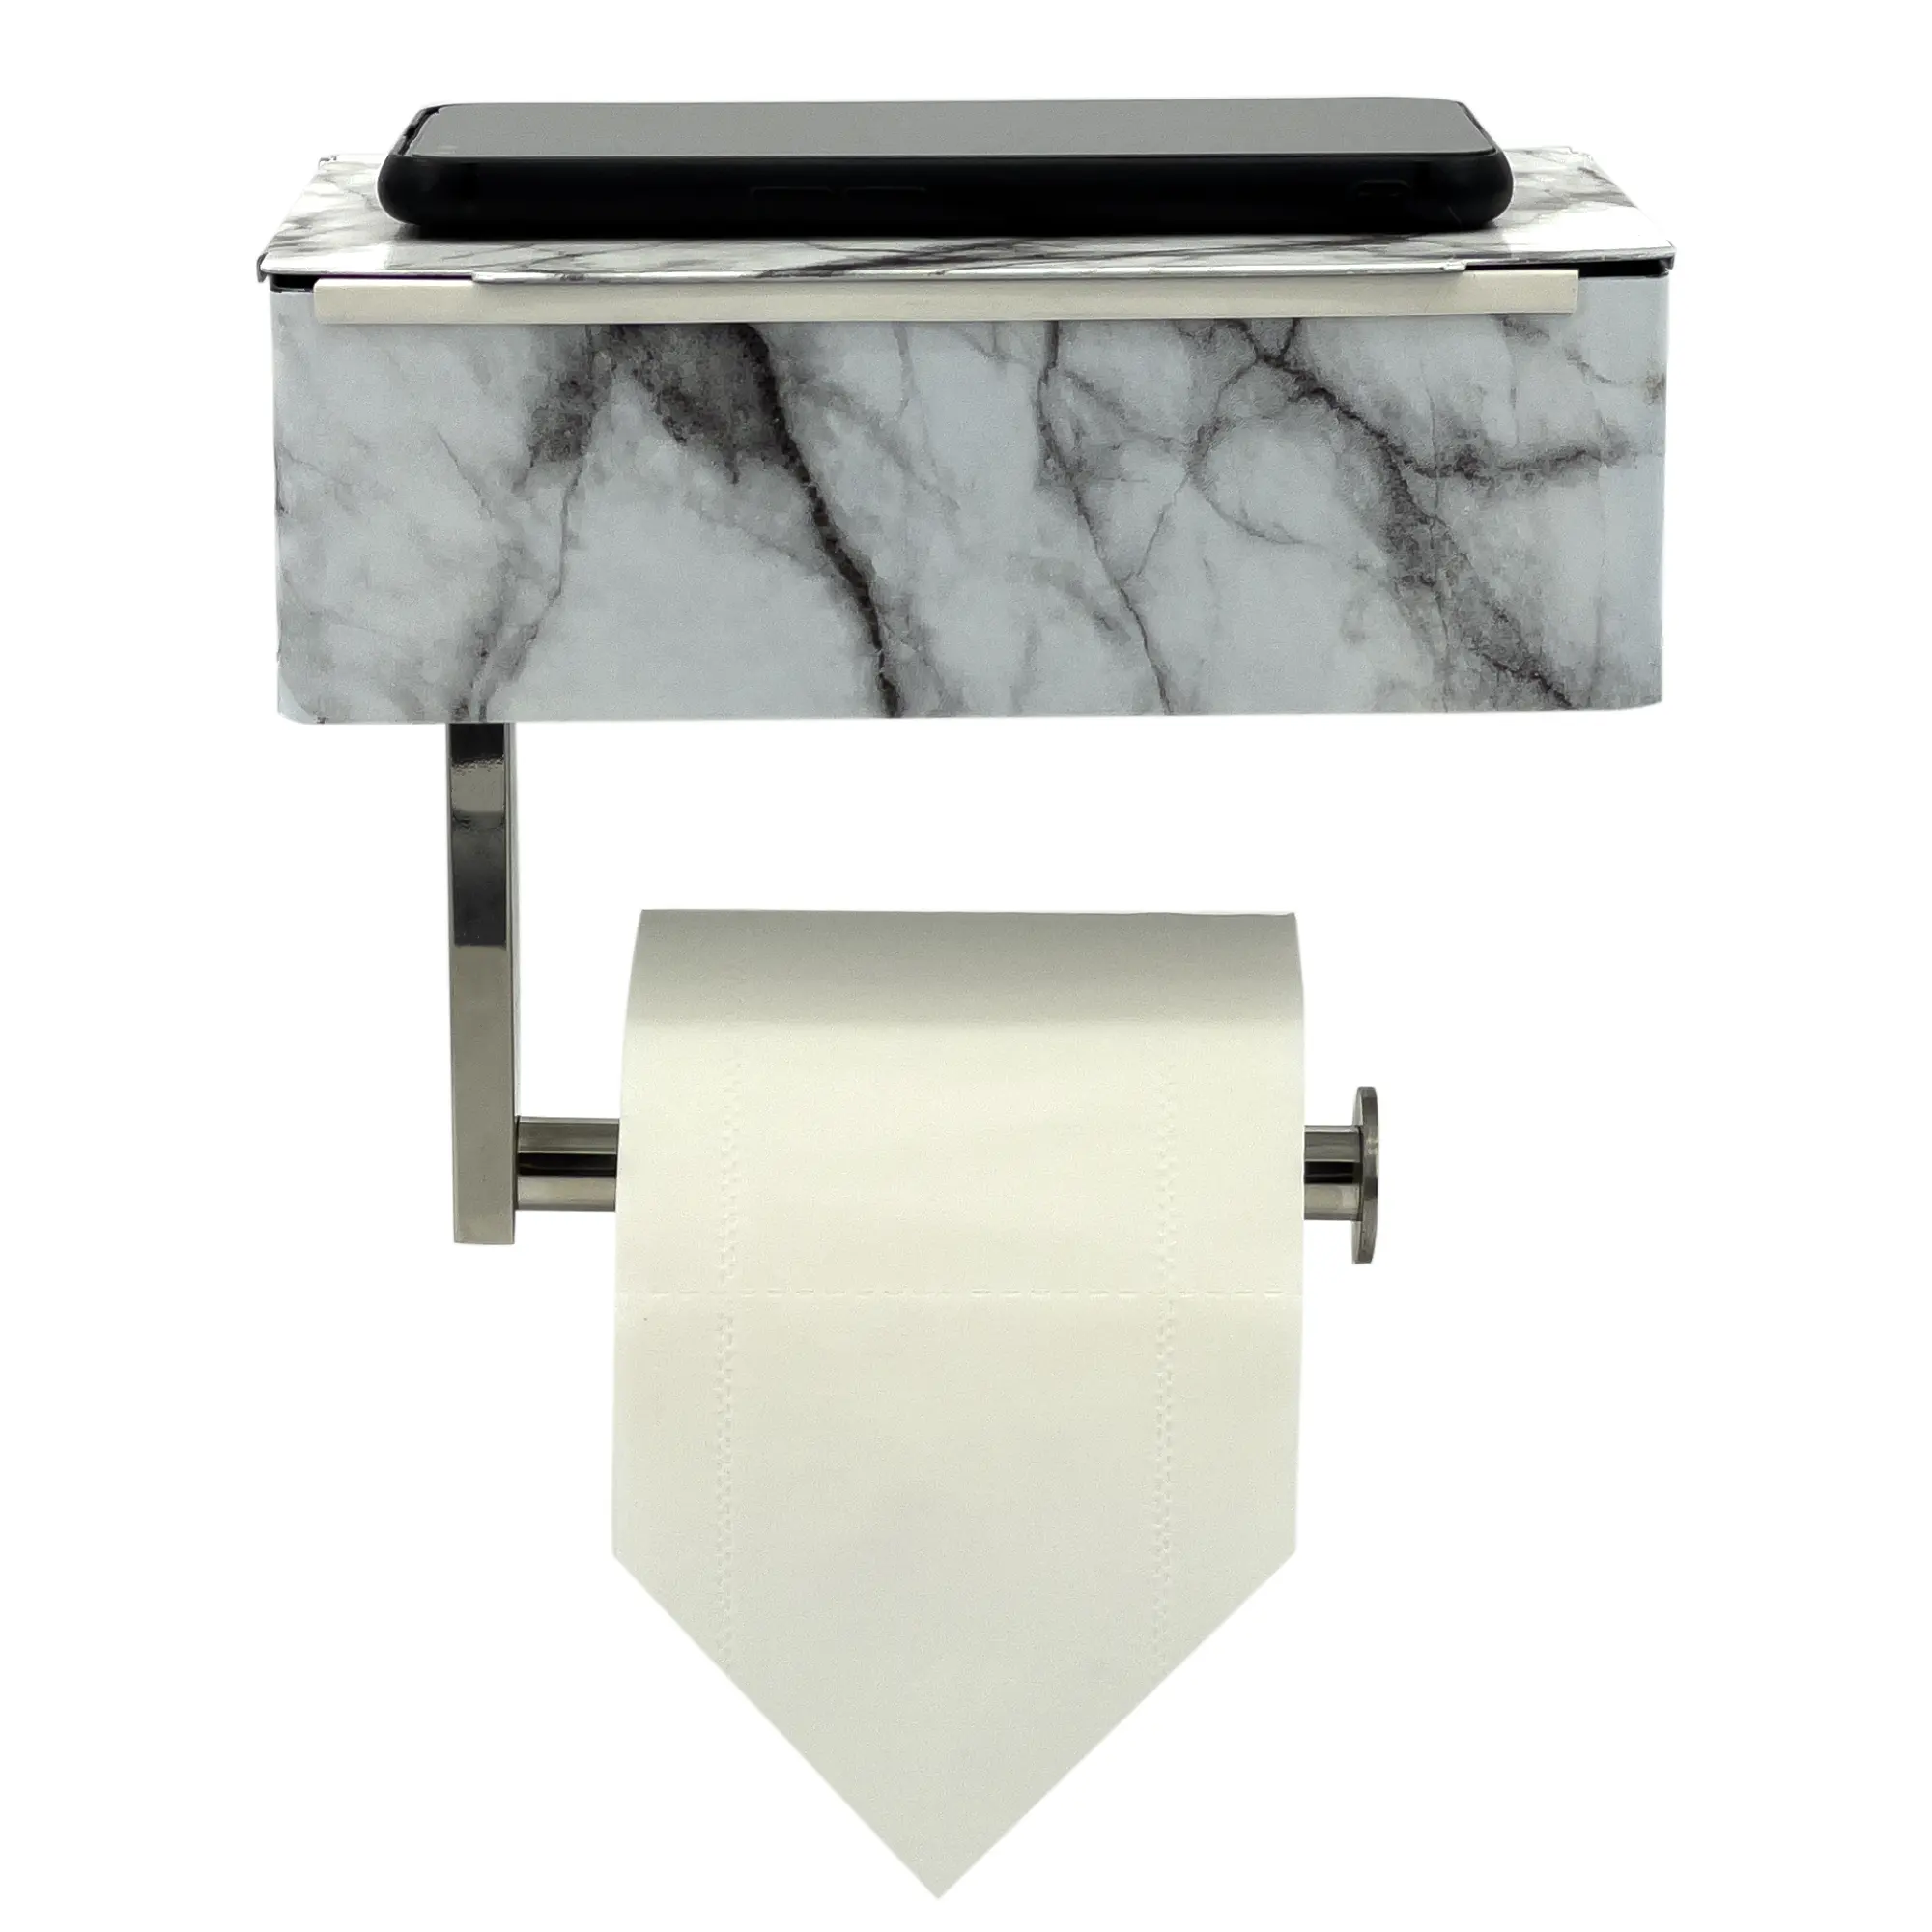 Moderner selbst klebender Toiletten papier handtuch halter in Marmor farbe mit Telefon regal und Aufbewahrung sbox für Wischt uch halter